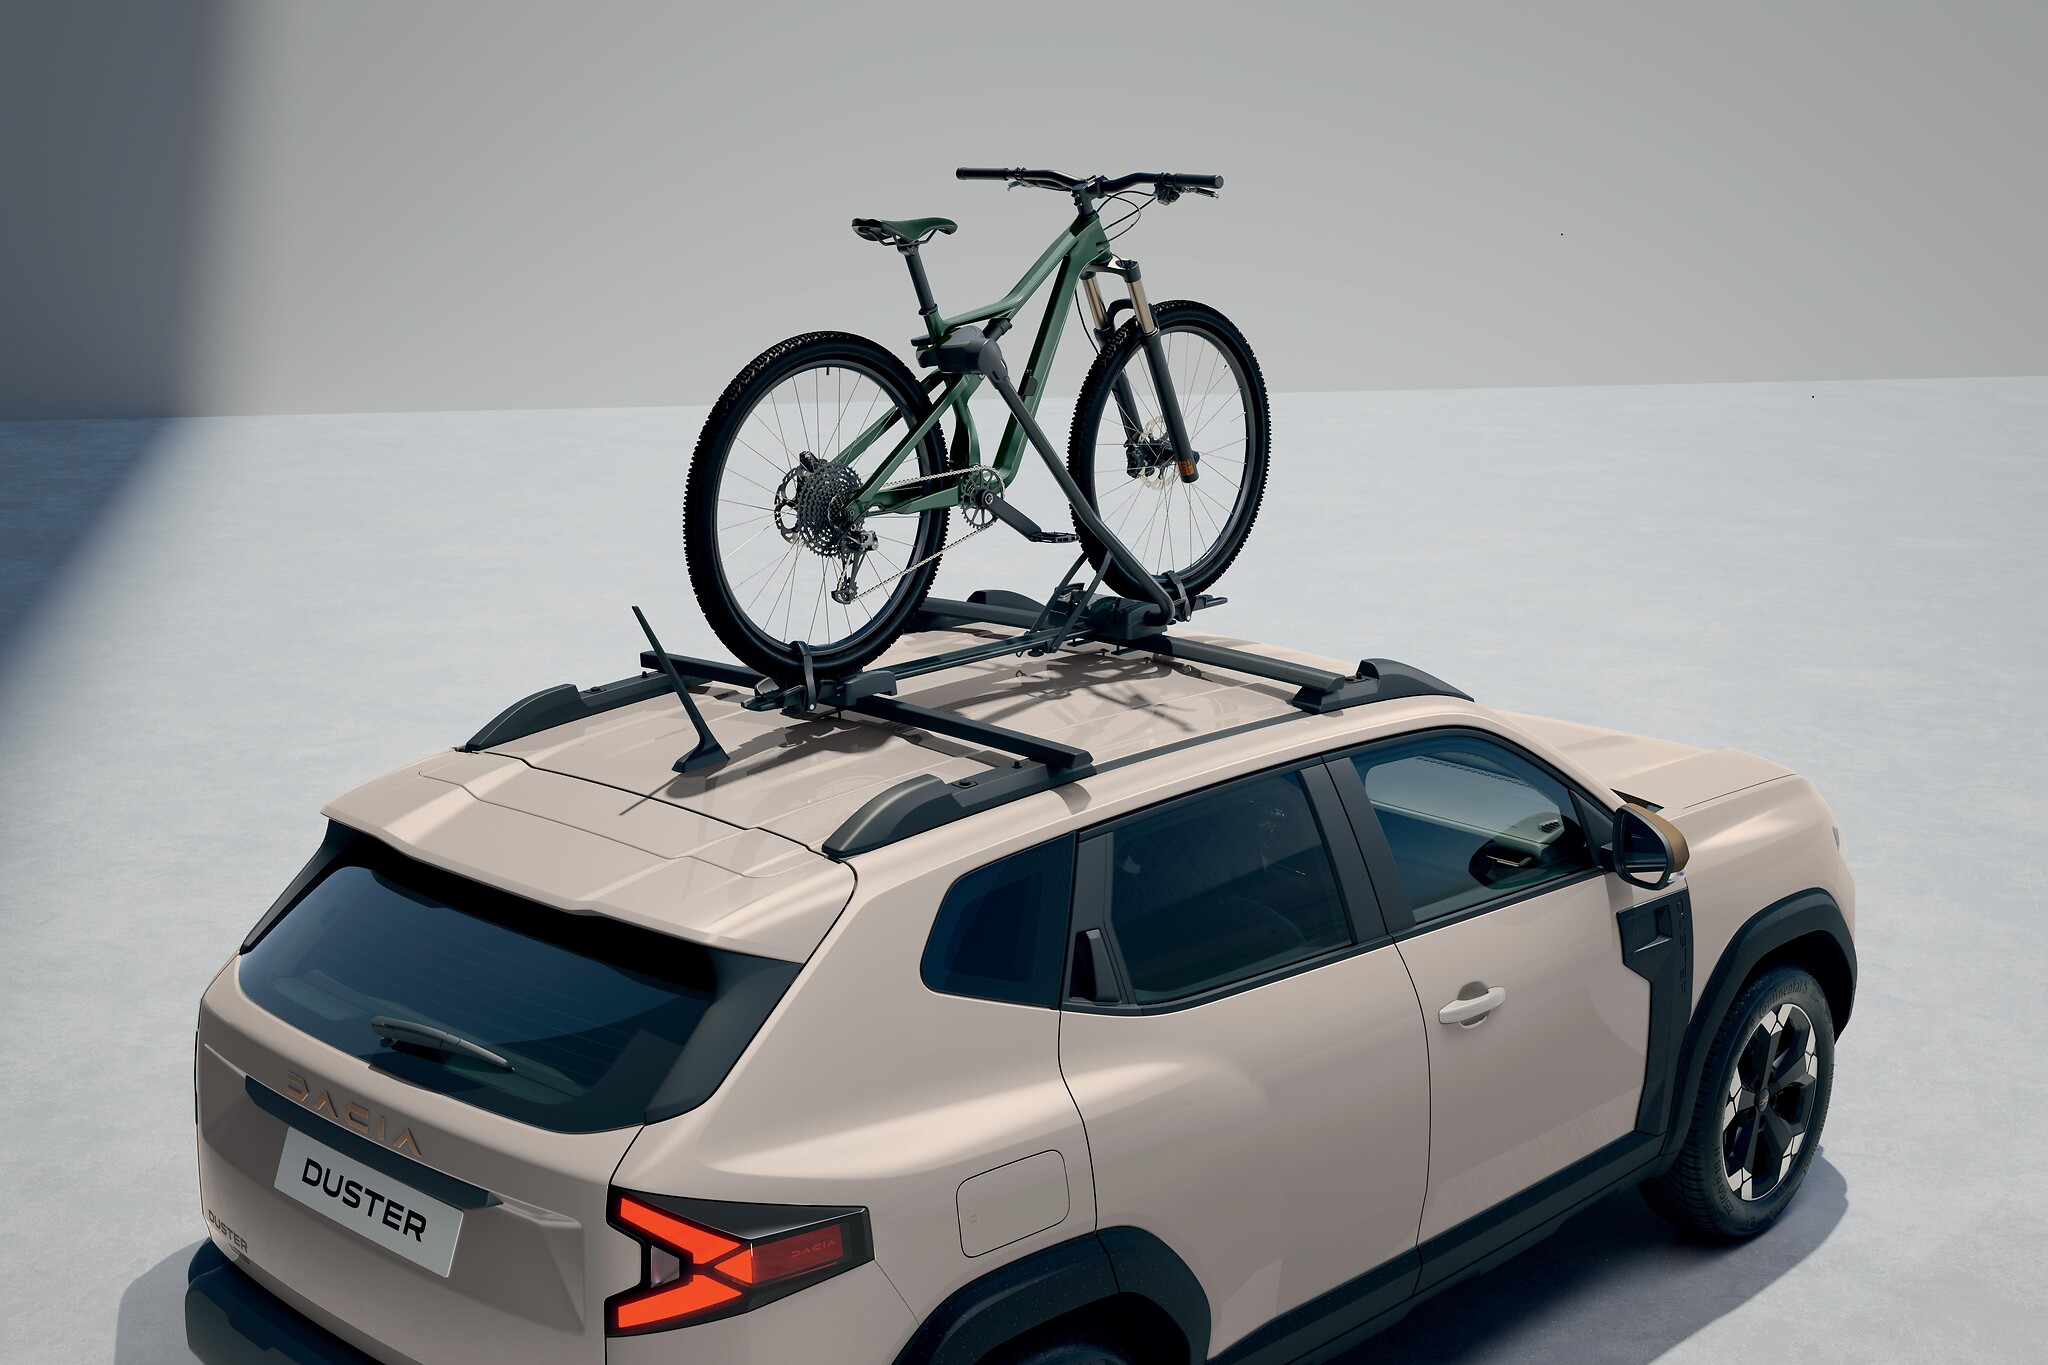 Porte-vélo sur barres de toit